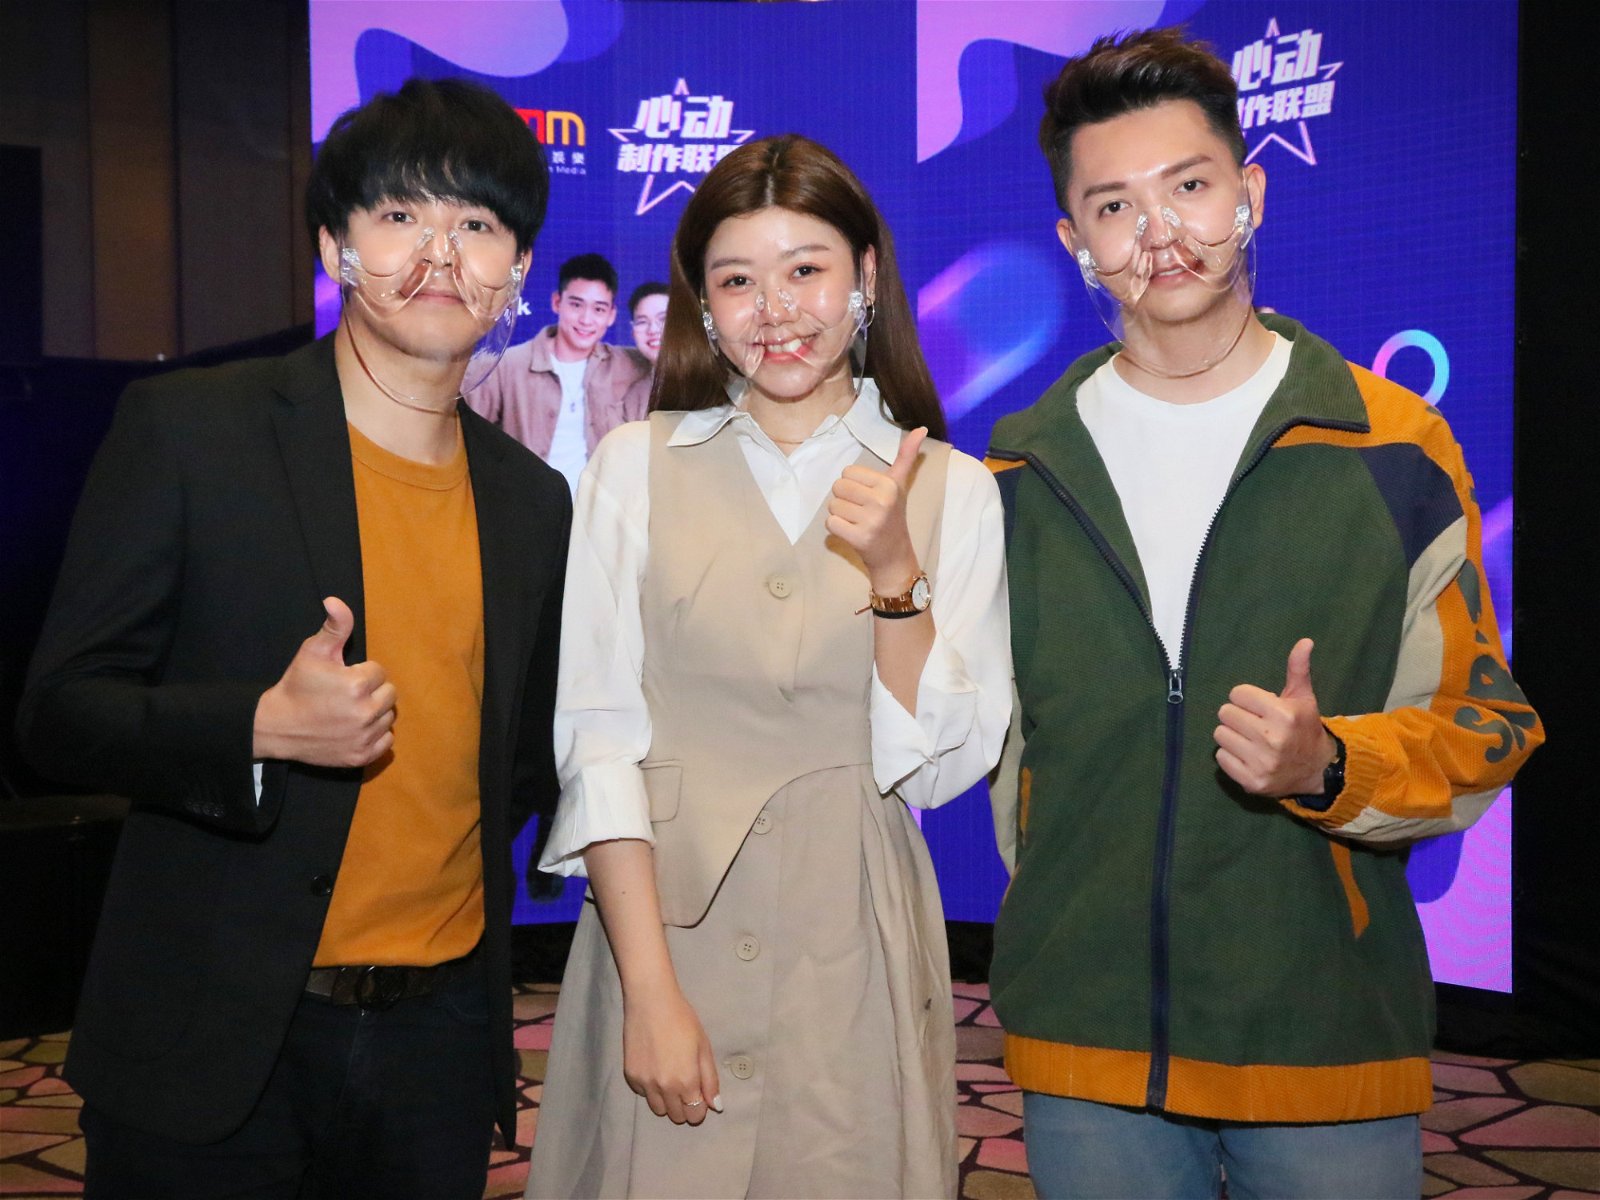 许佳麟、蔡恩雨和朱浩仁会制作与音乐相关的节目。